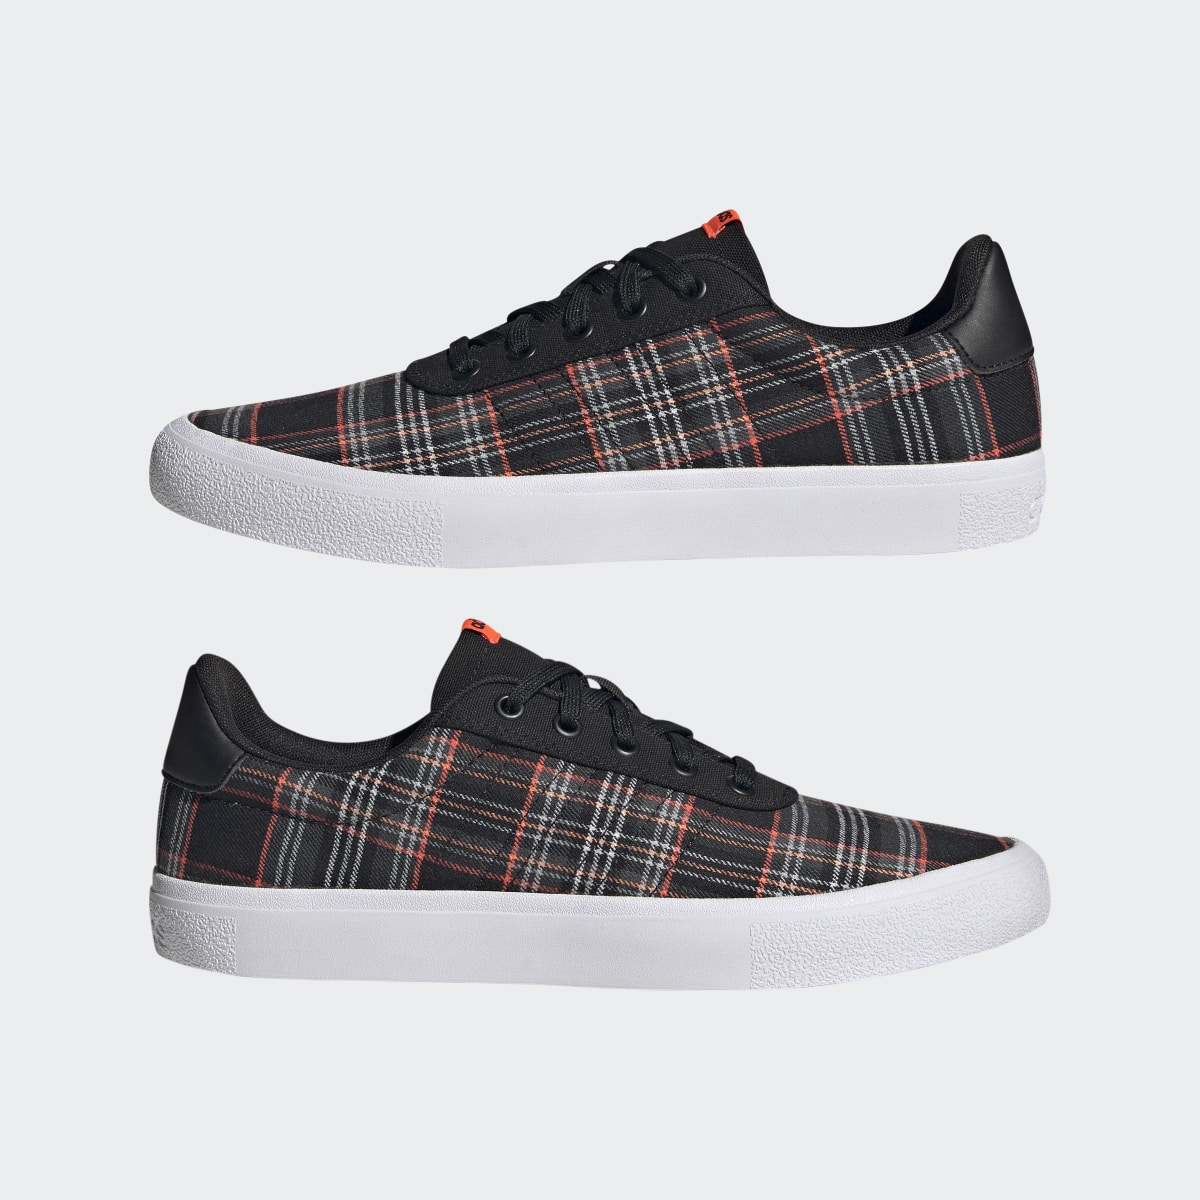 Adidas Vulc Raid3r Lifestyle Skateboarding 3-Stripes Branding Shoes. 8